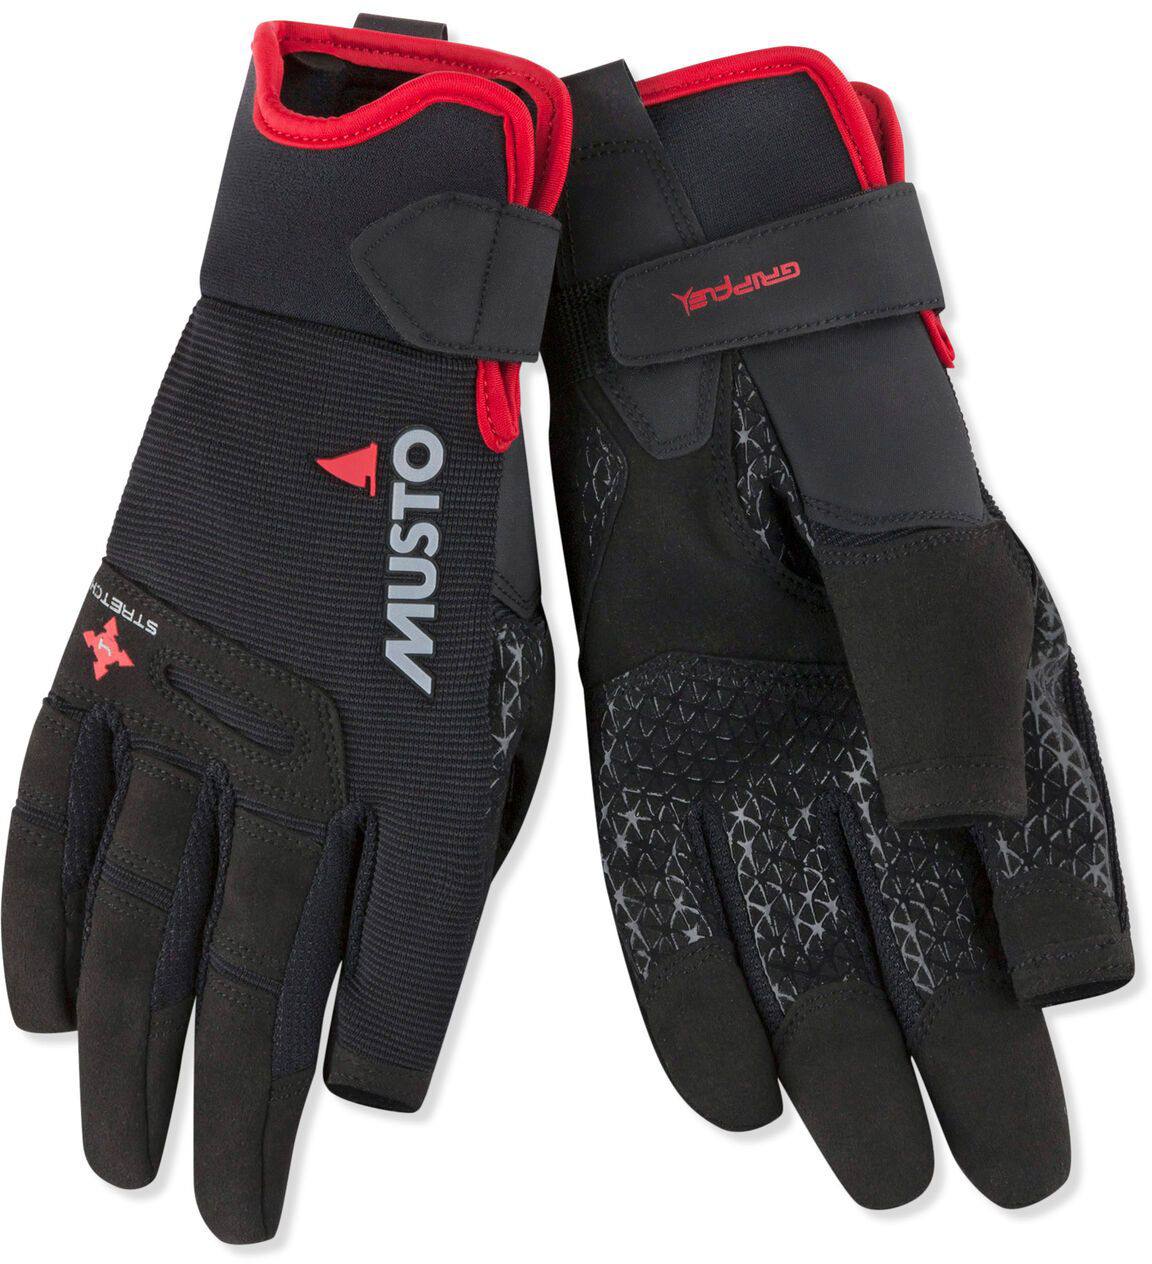 Musto Performance Longfinger Gloves